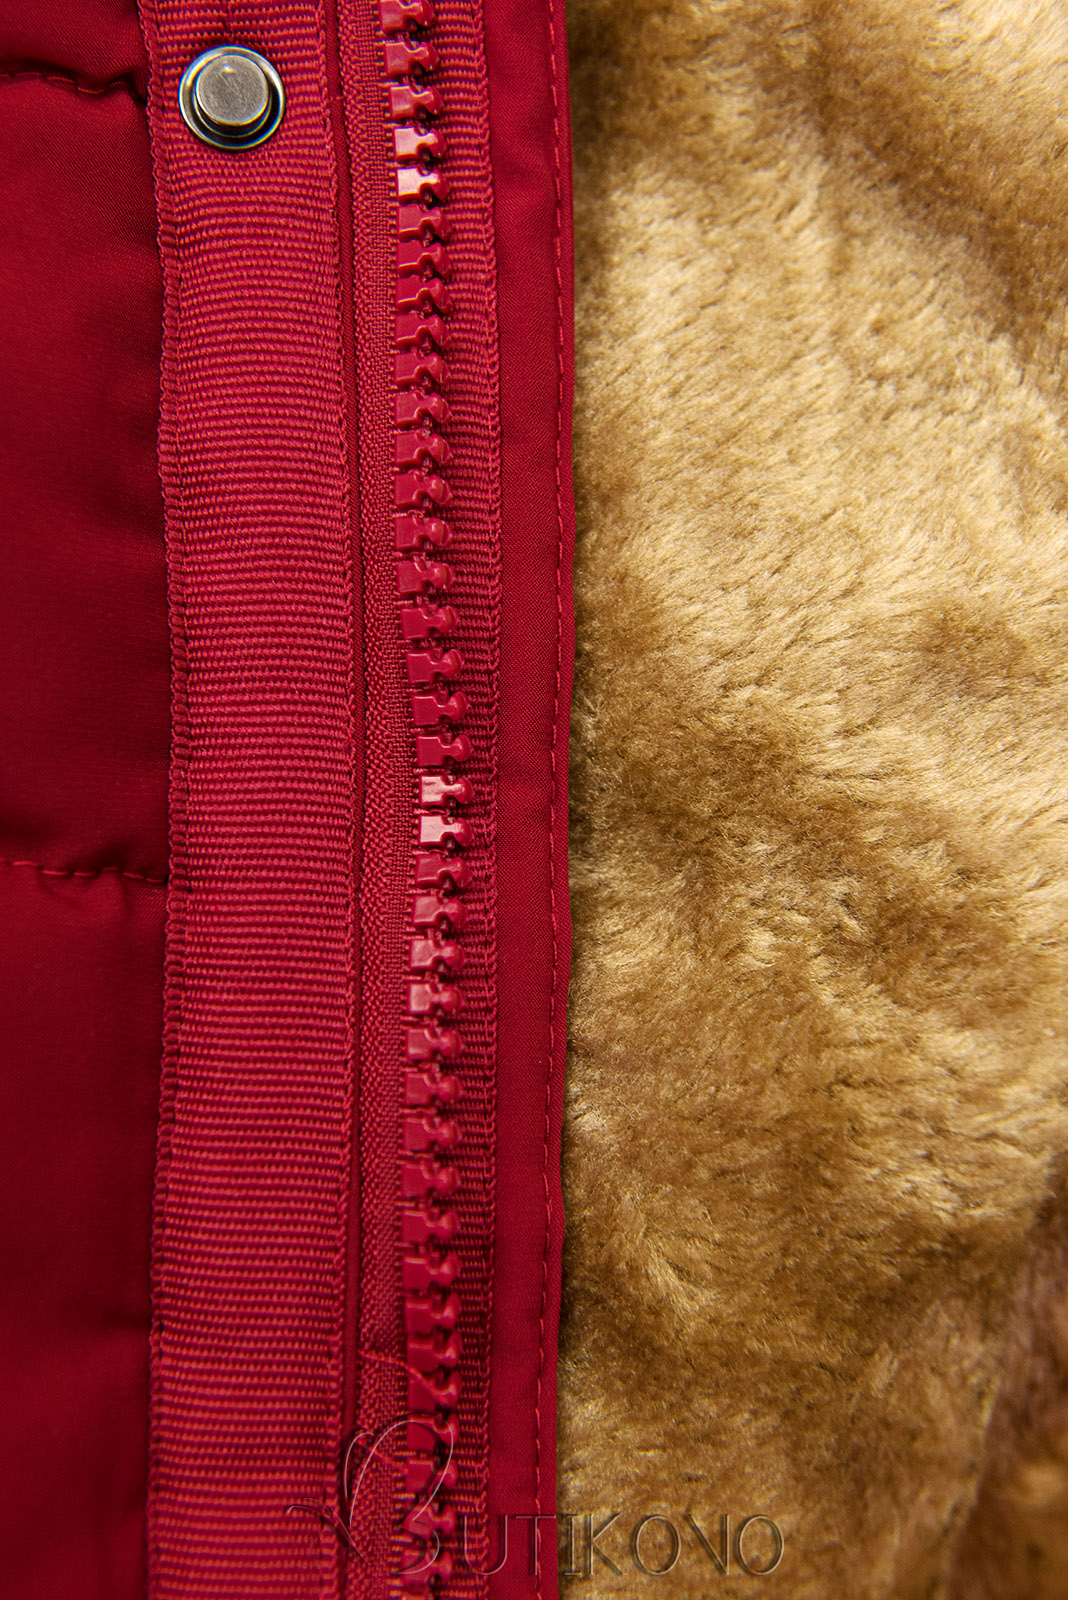 Červená prošívaná zimní bunda s kapucí